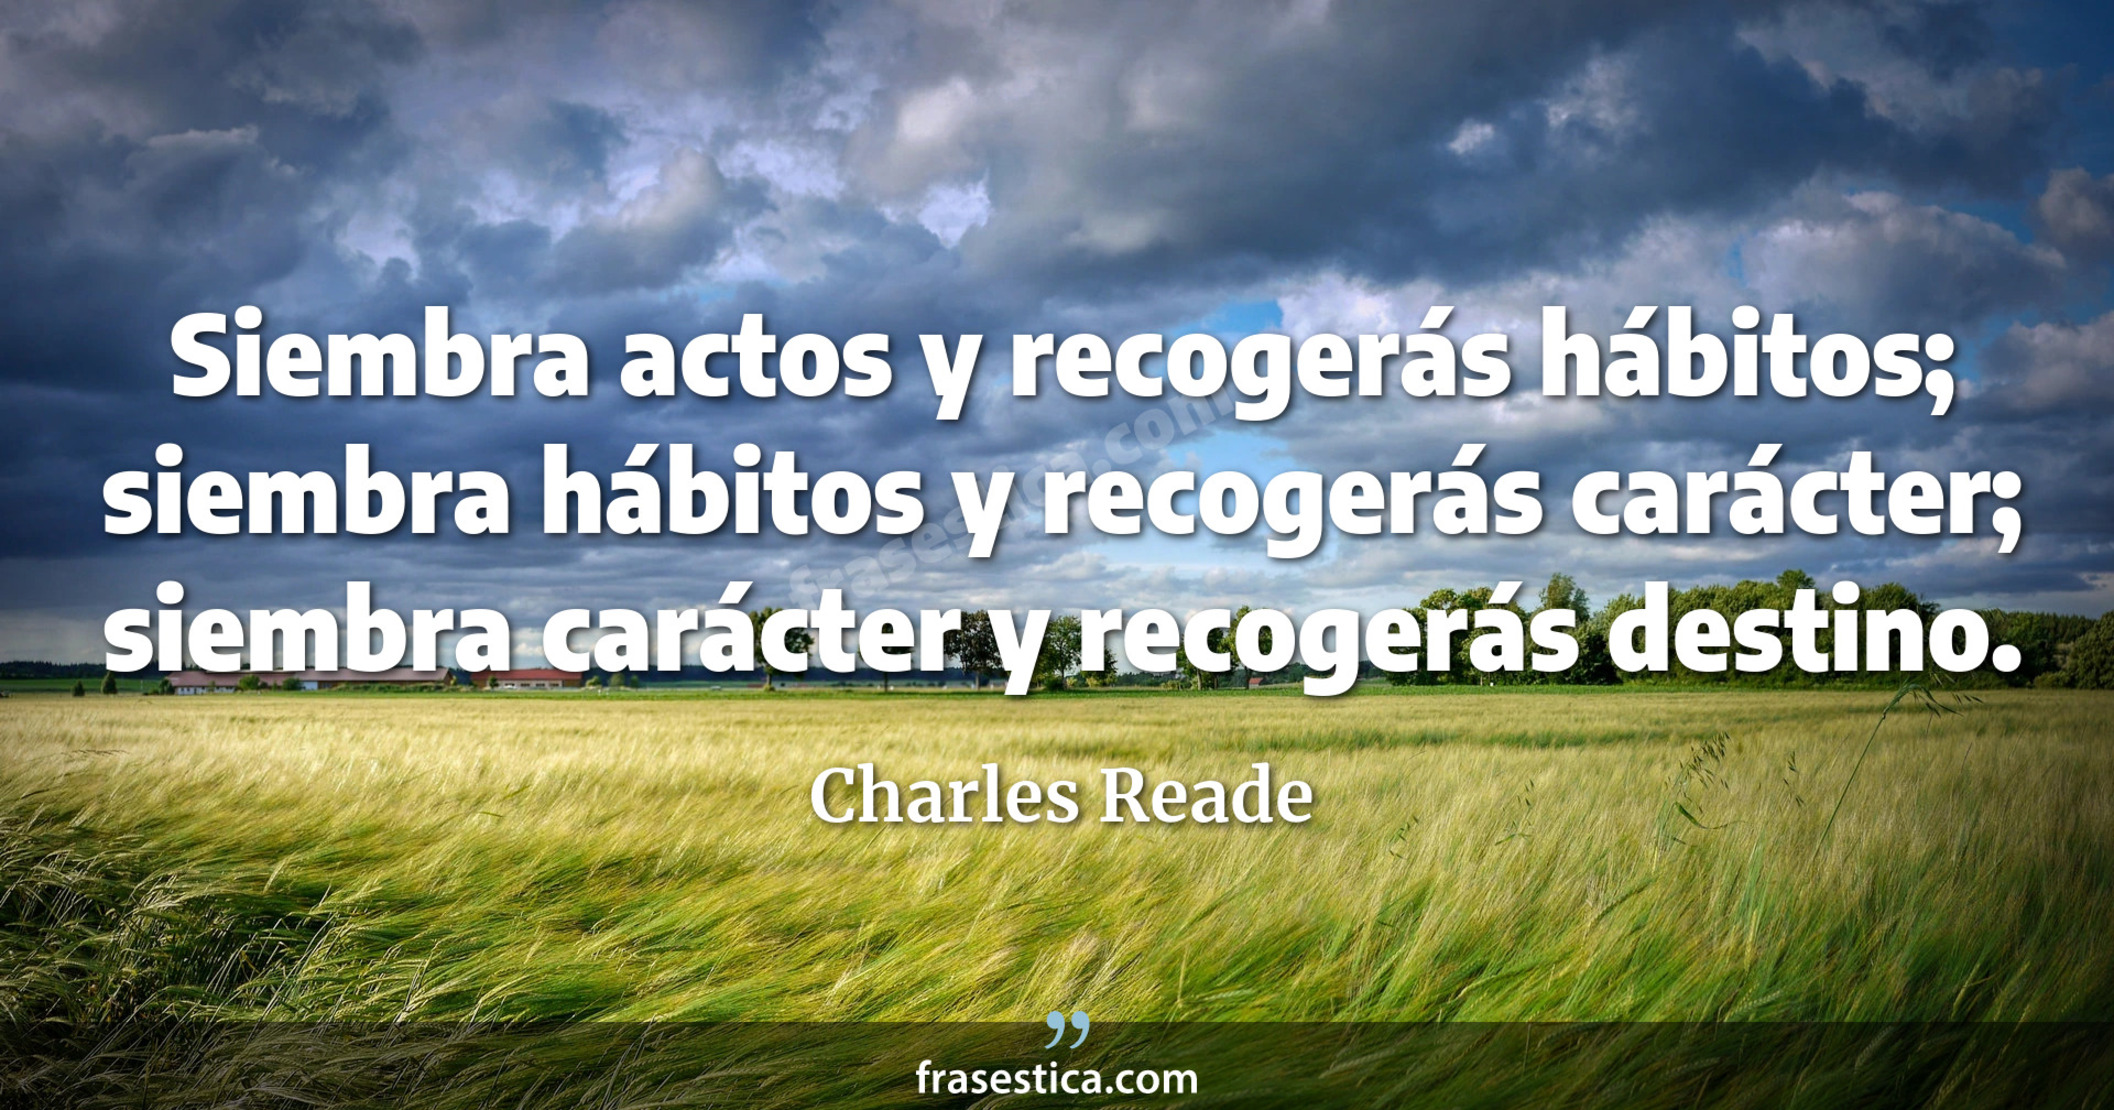 Siembra actos y recogerás hábitos; siembra hábitos y recogerás carácter; siembra carácter y recogerás destino. - Charles Reade